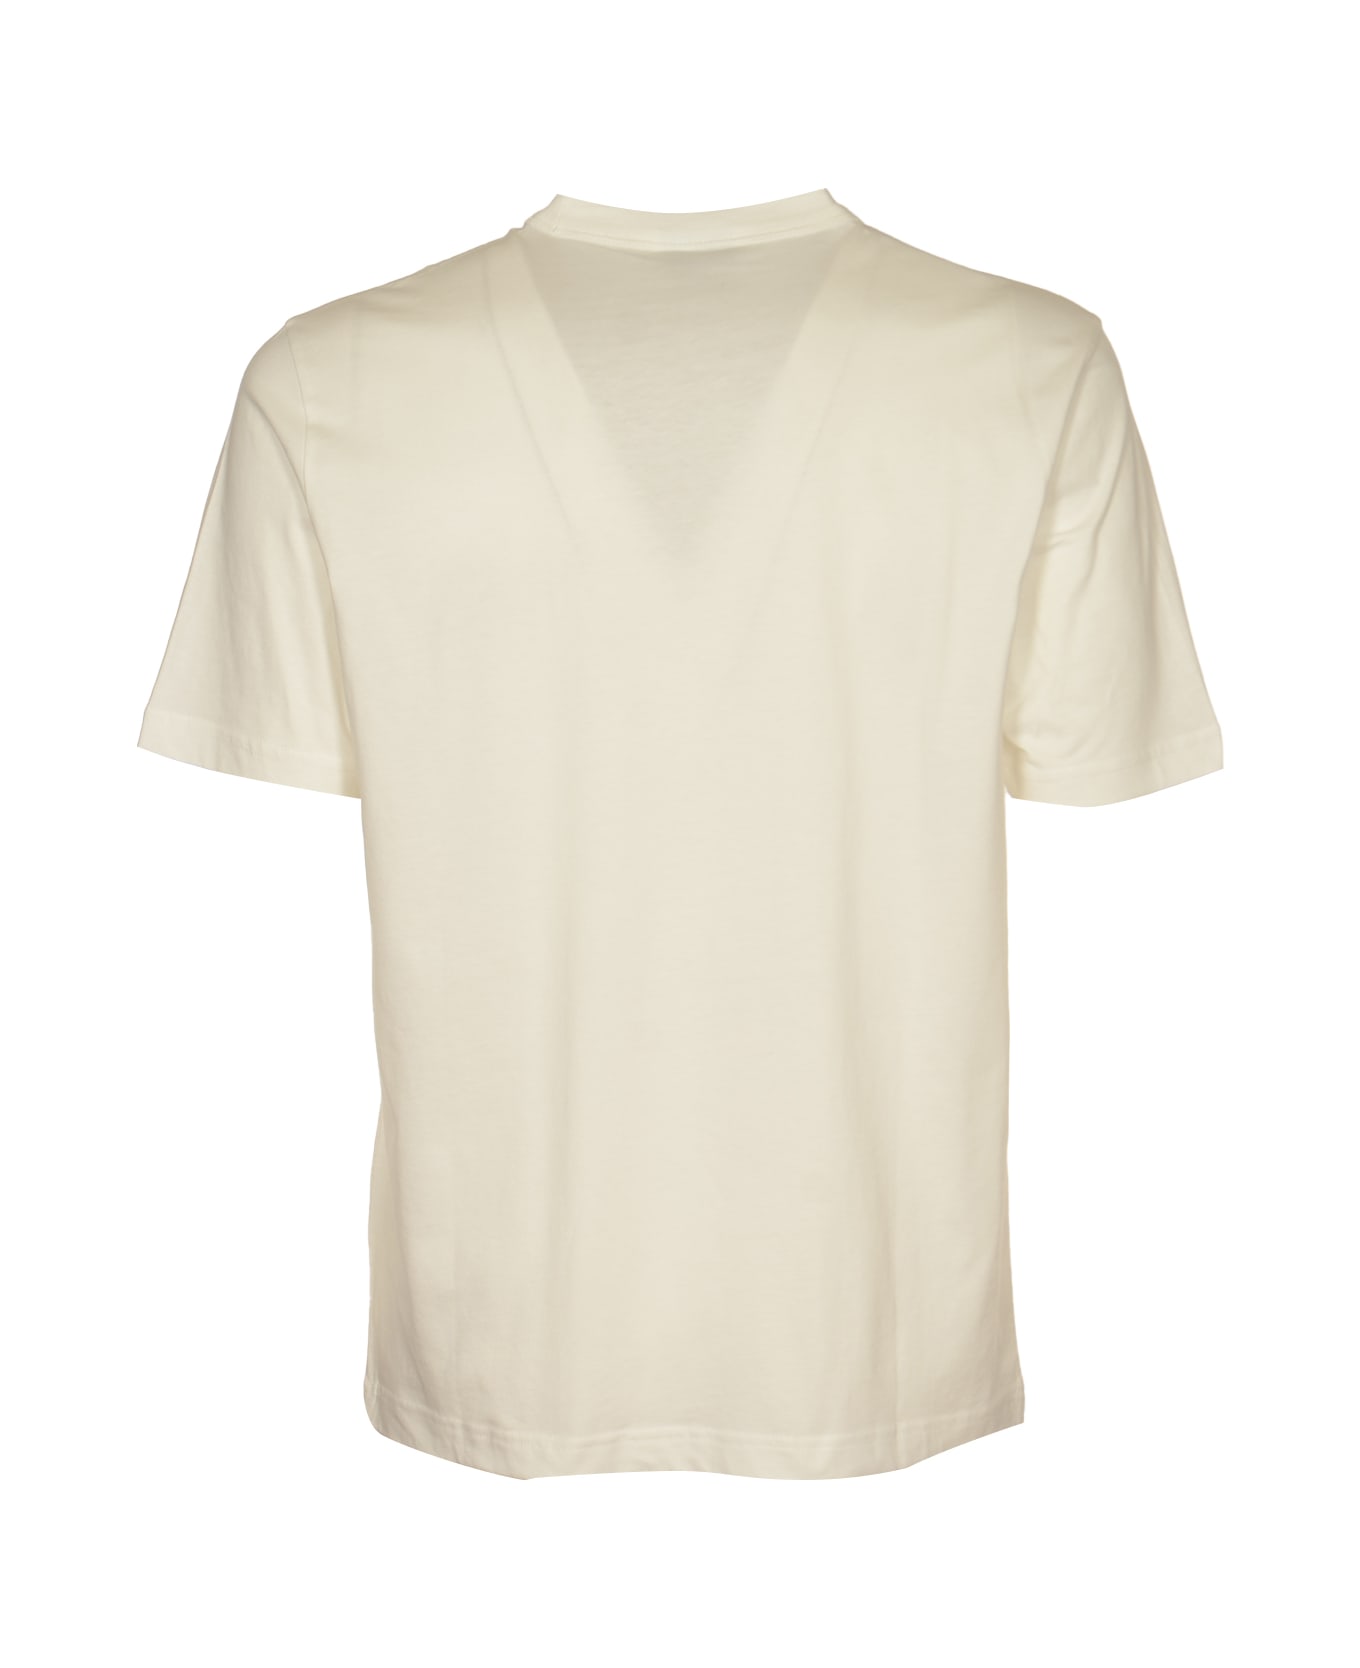 Paul Smith Linear Skull T-shirt - White シャツ